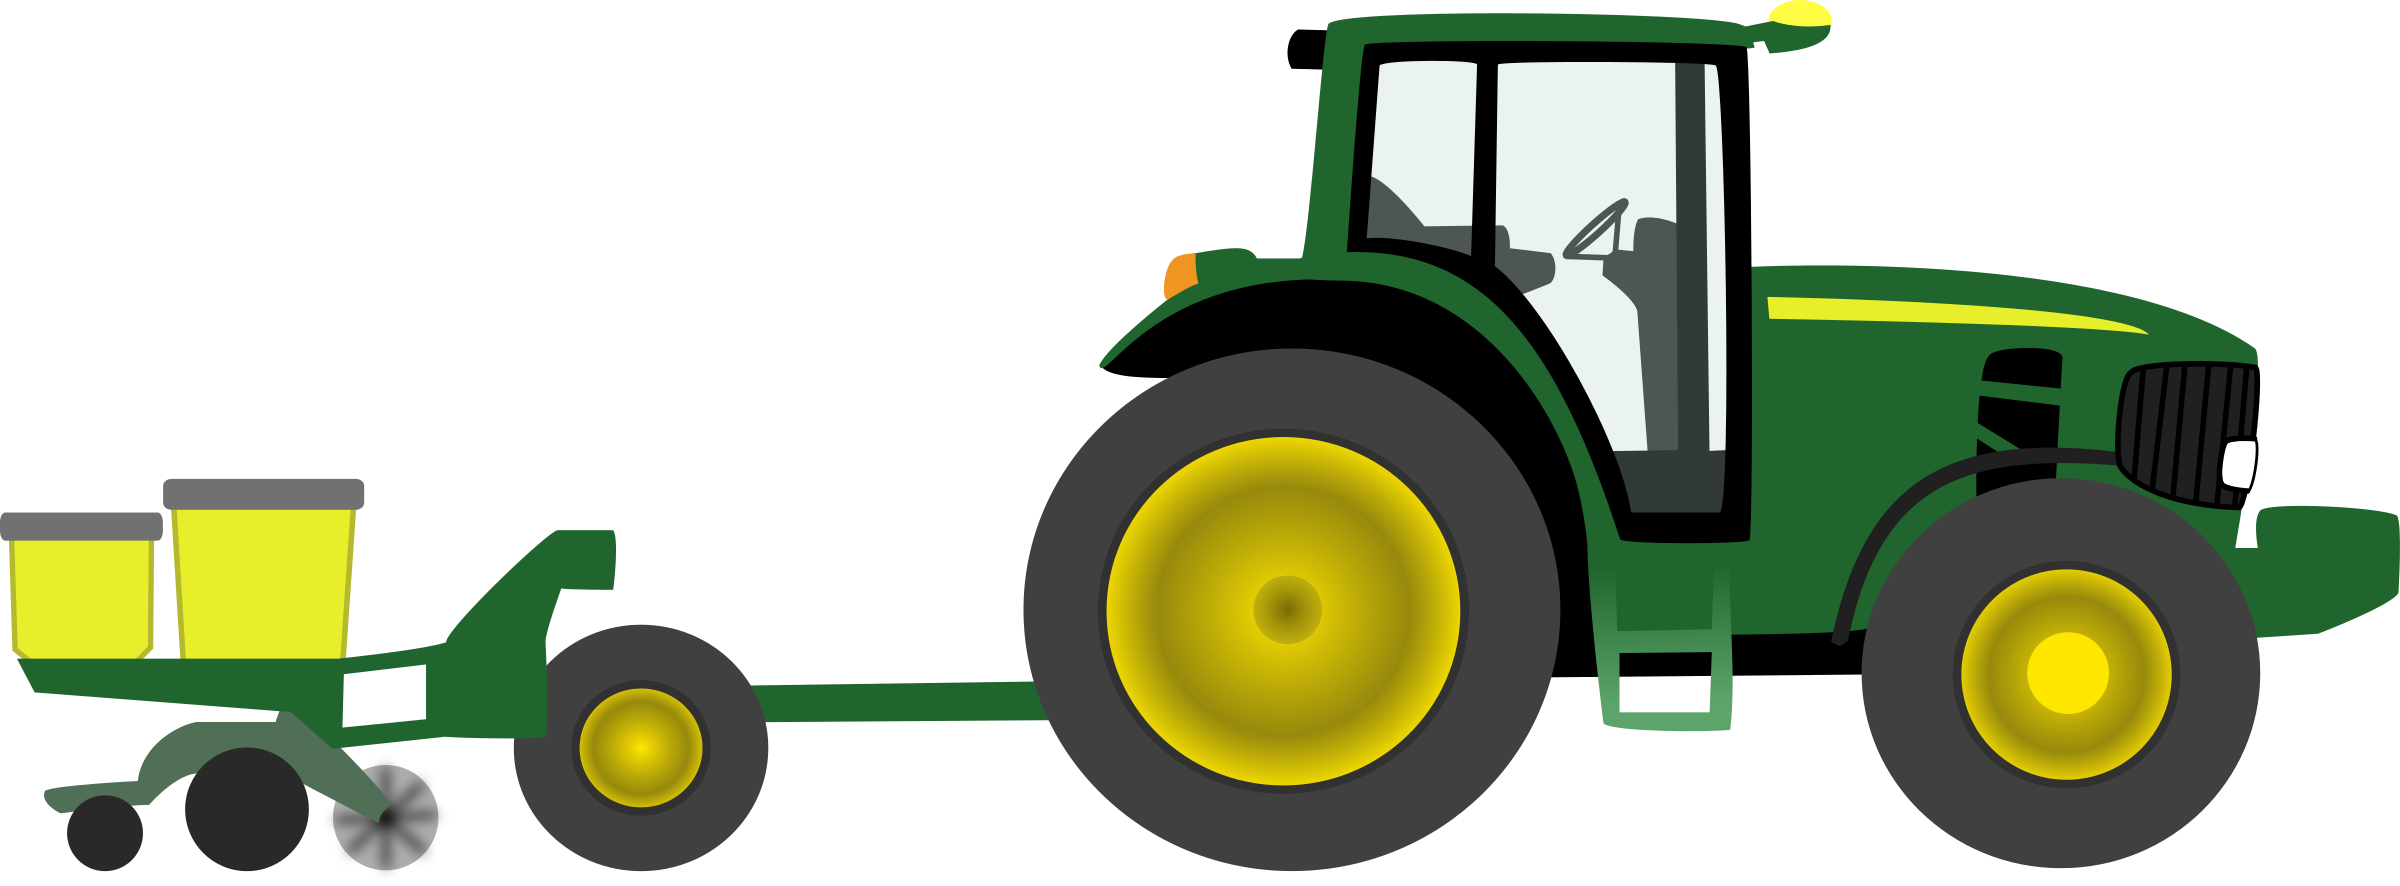 John deere green tractor clip